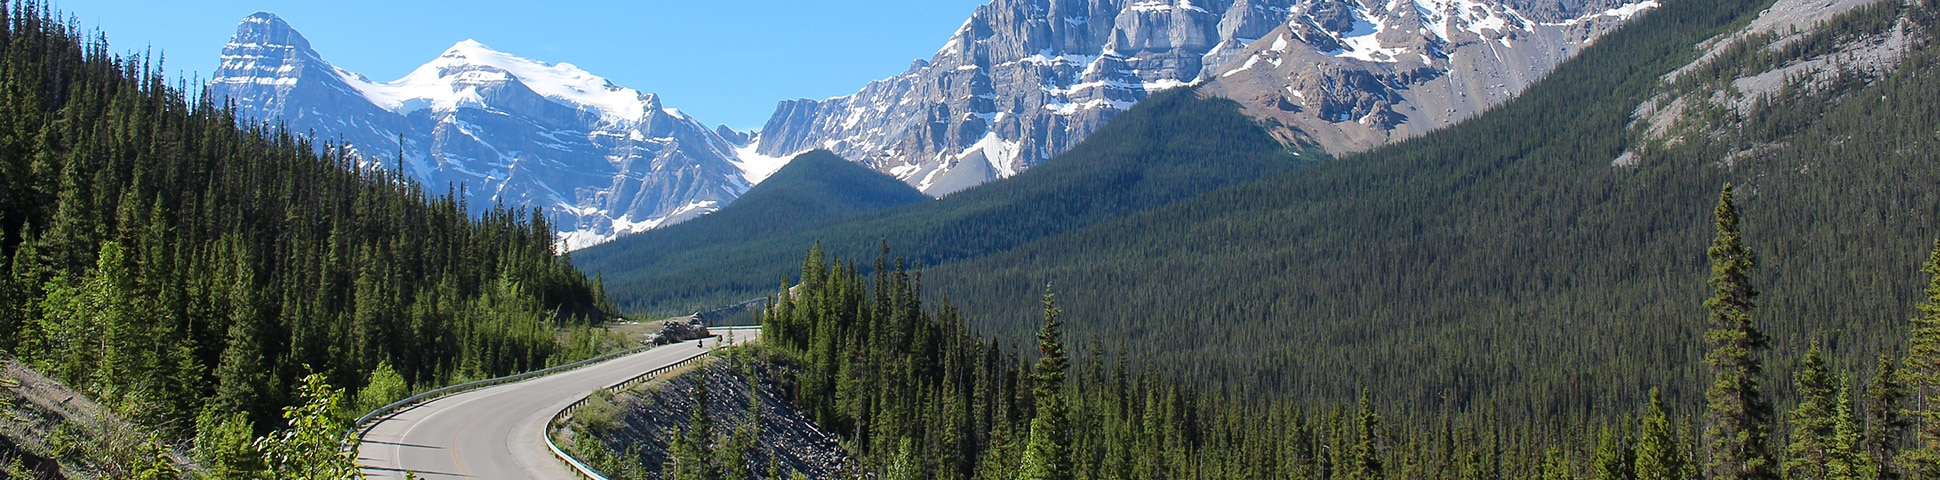 Panoramic view on Jasper to Banff road biking route